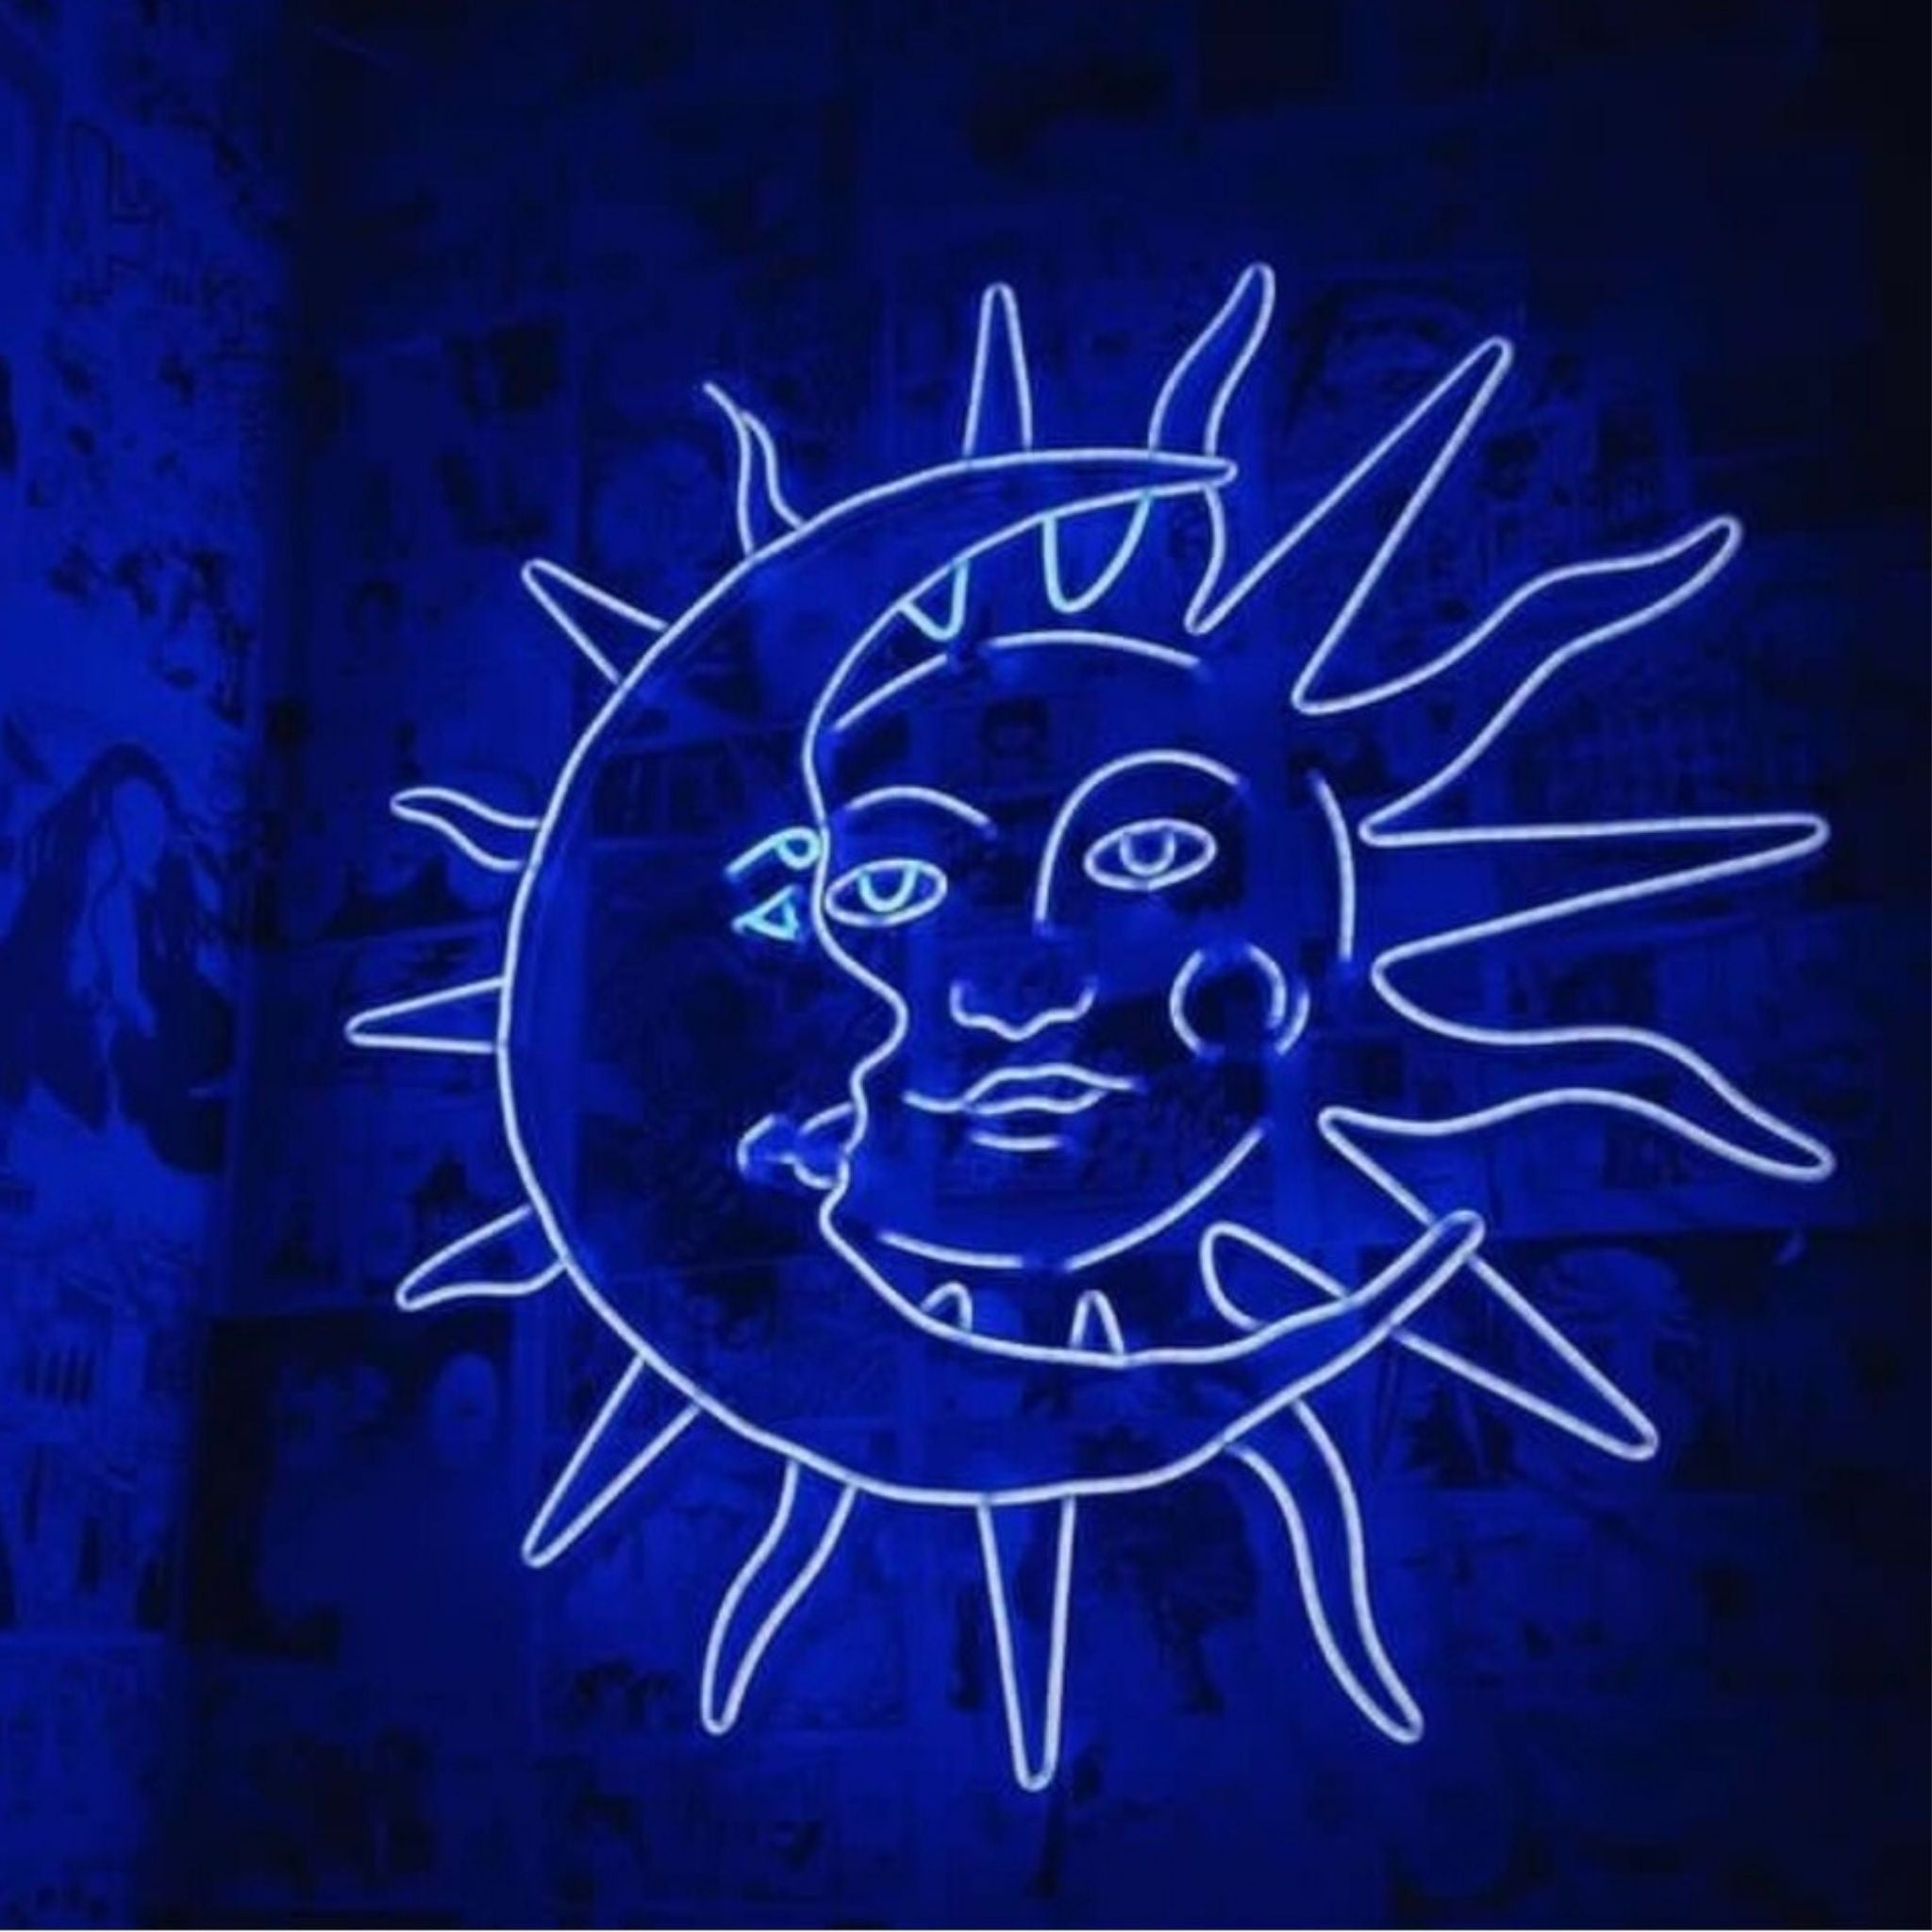 Celestial Harmony: Moon and Sun Neon Sign